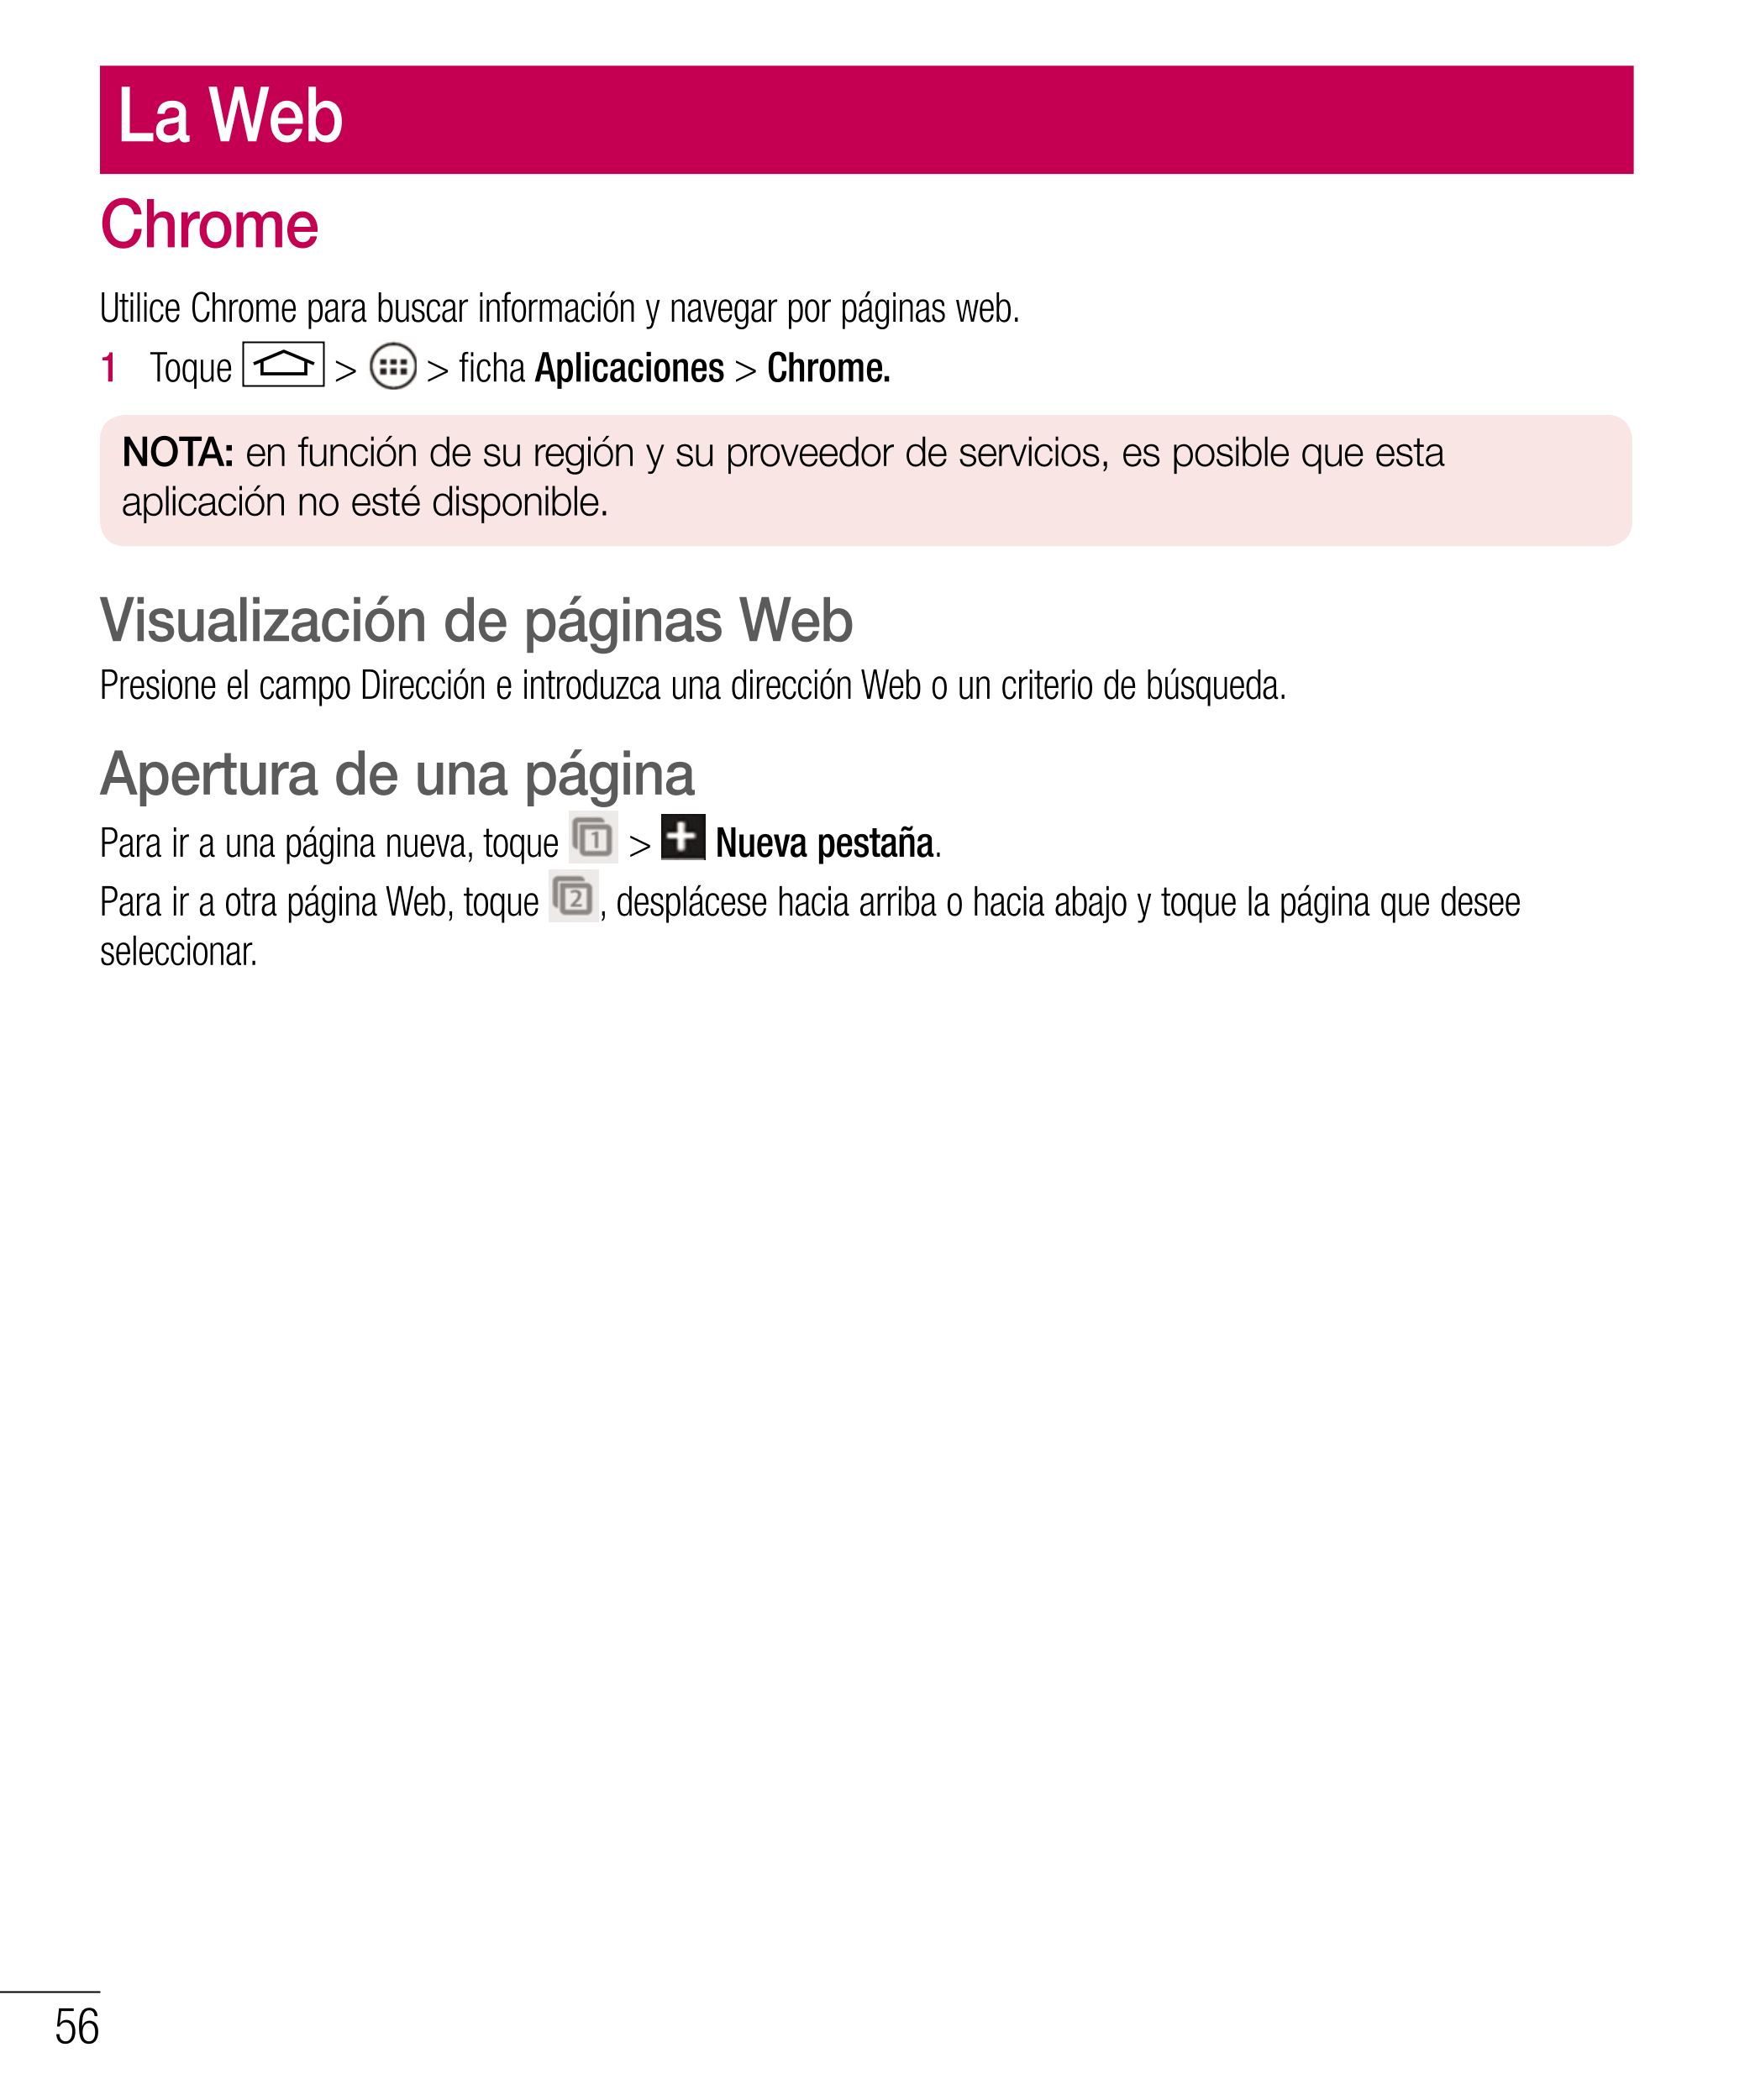 La Web
Chrome
Utilice Chrome para buscar información y navegar por páginas web.
1   Toque   >   > ﬁ cha  Aplicaciones >  Chrome.